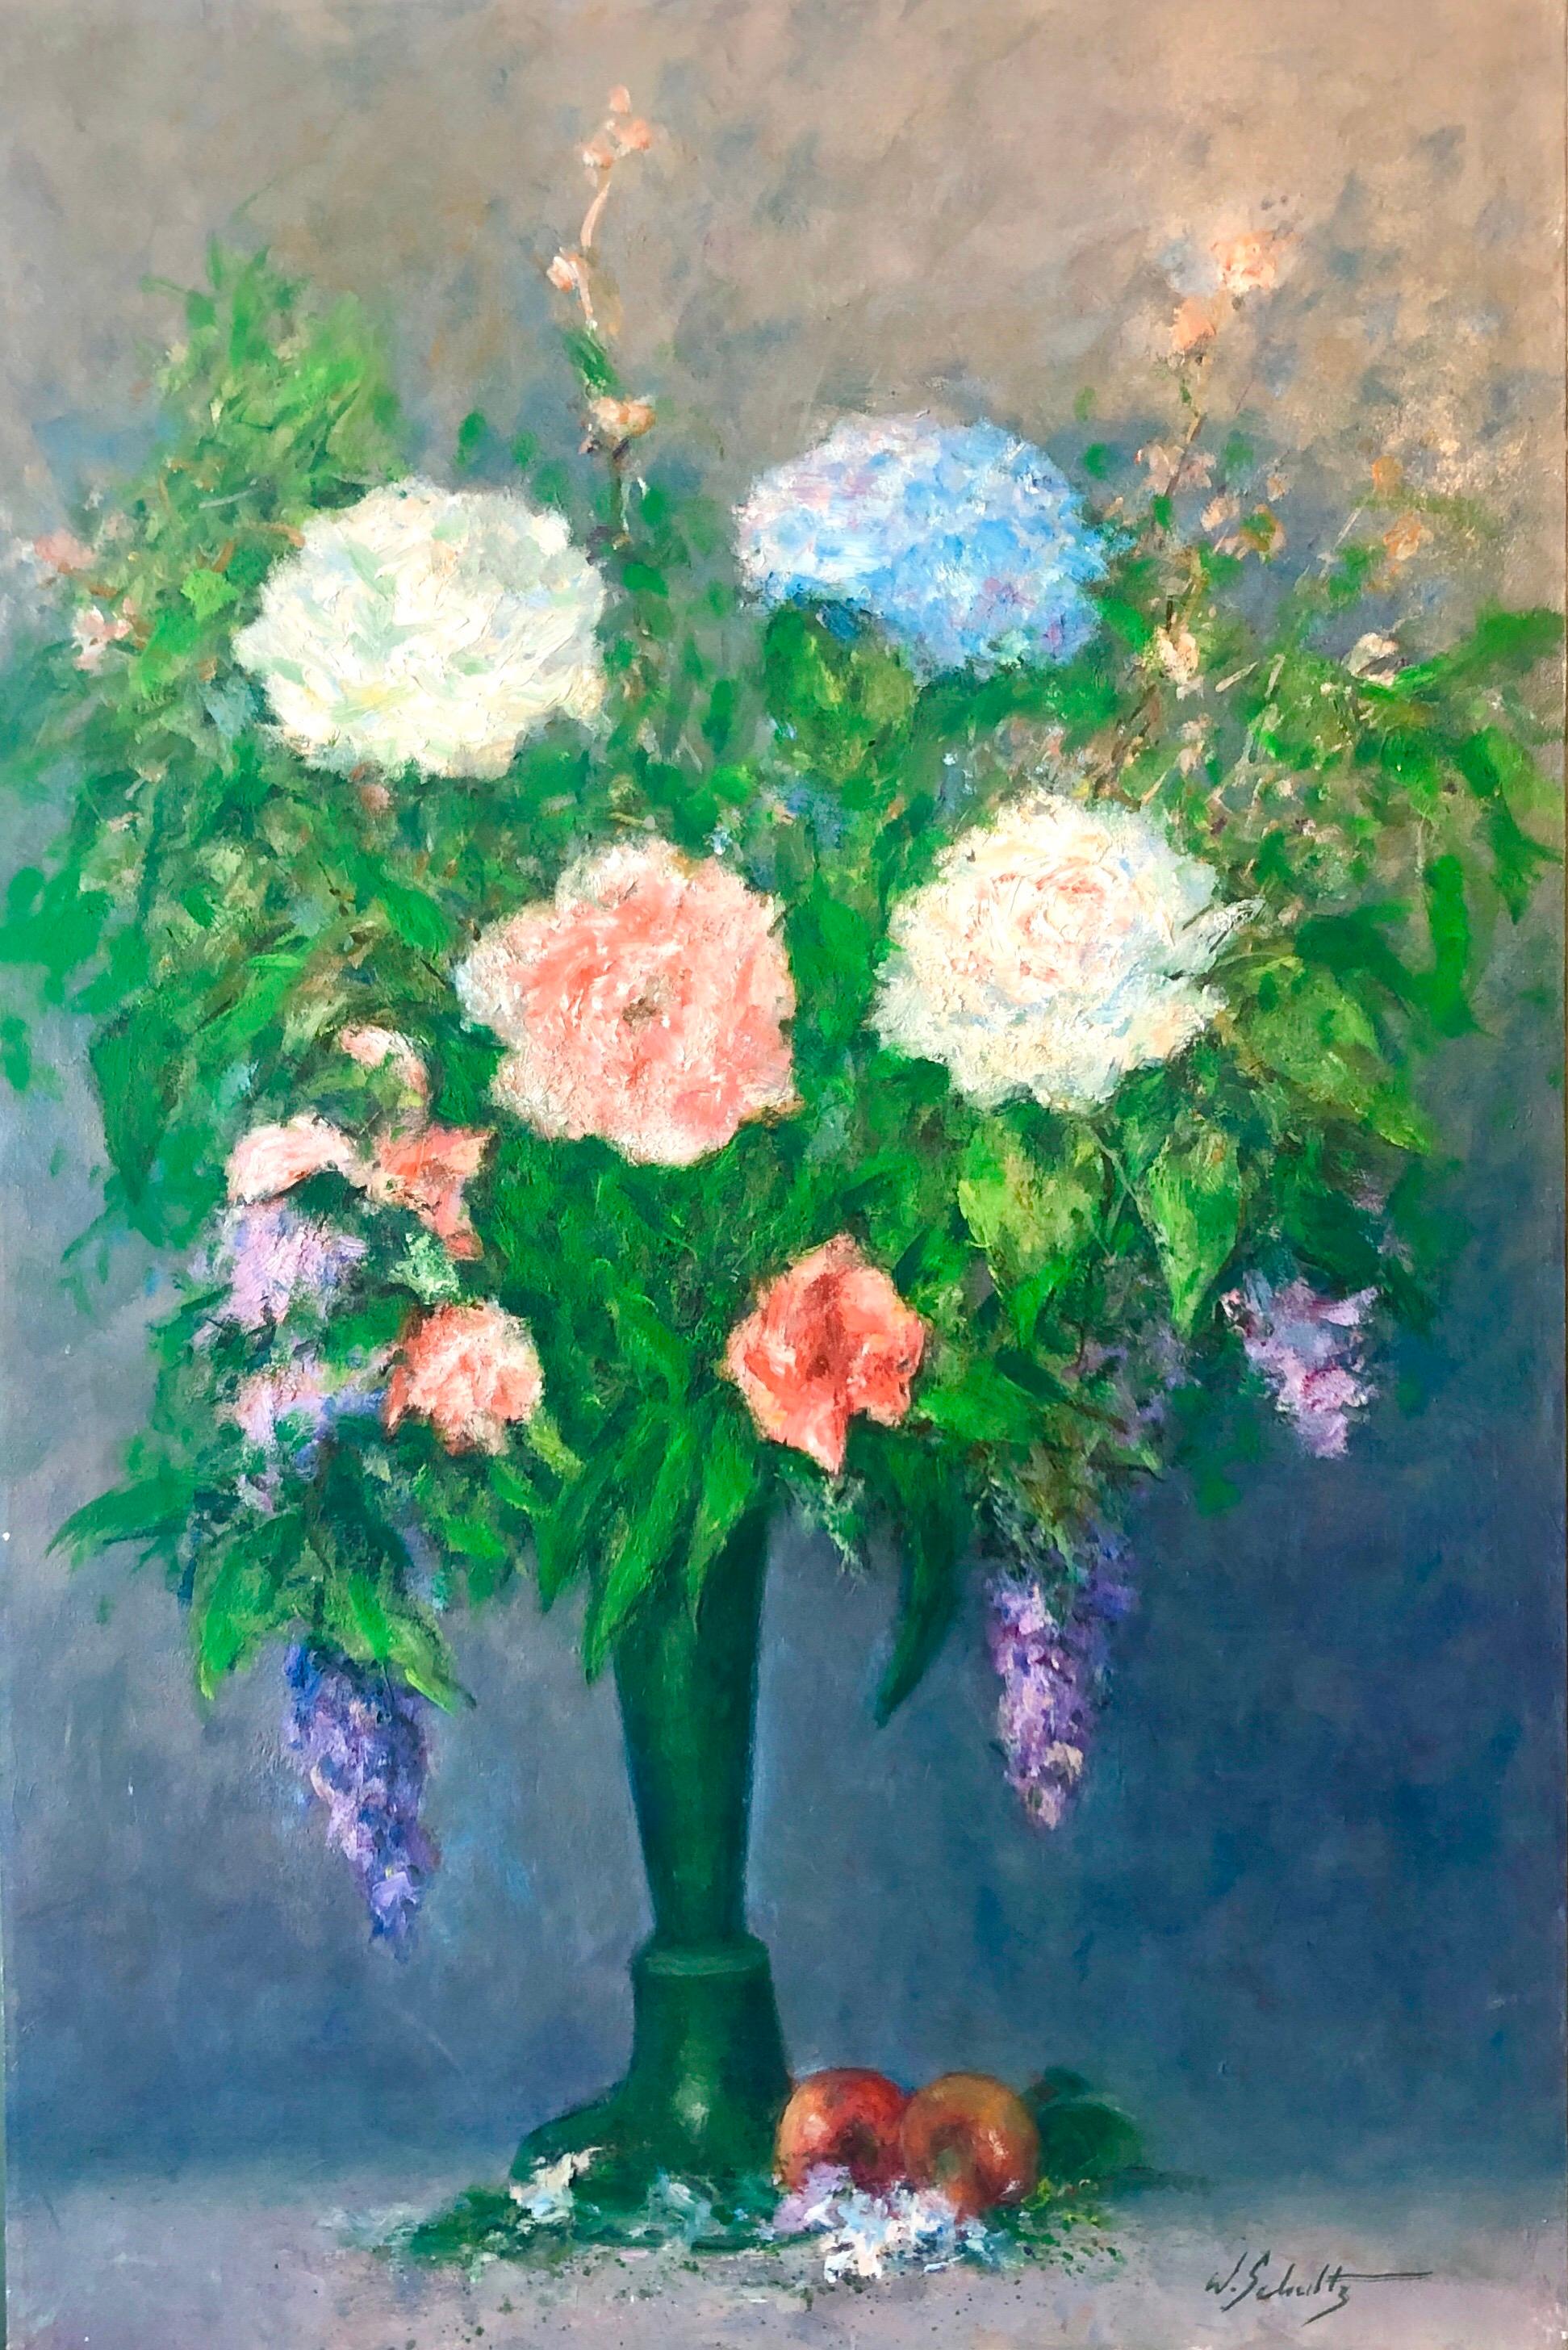 Amerikanisches impressionistisches Ölgemälde mit Blumen in Vase, lebhafte Blumen – Painting von William Schultz